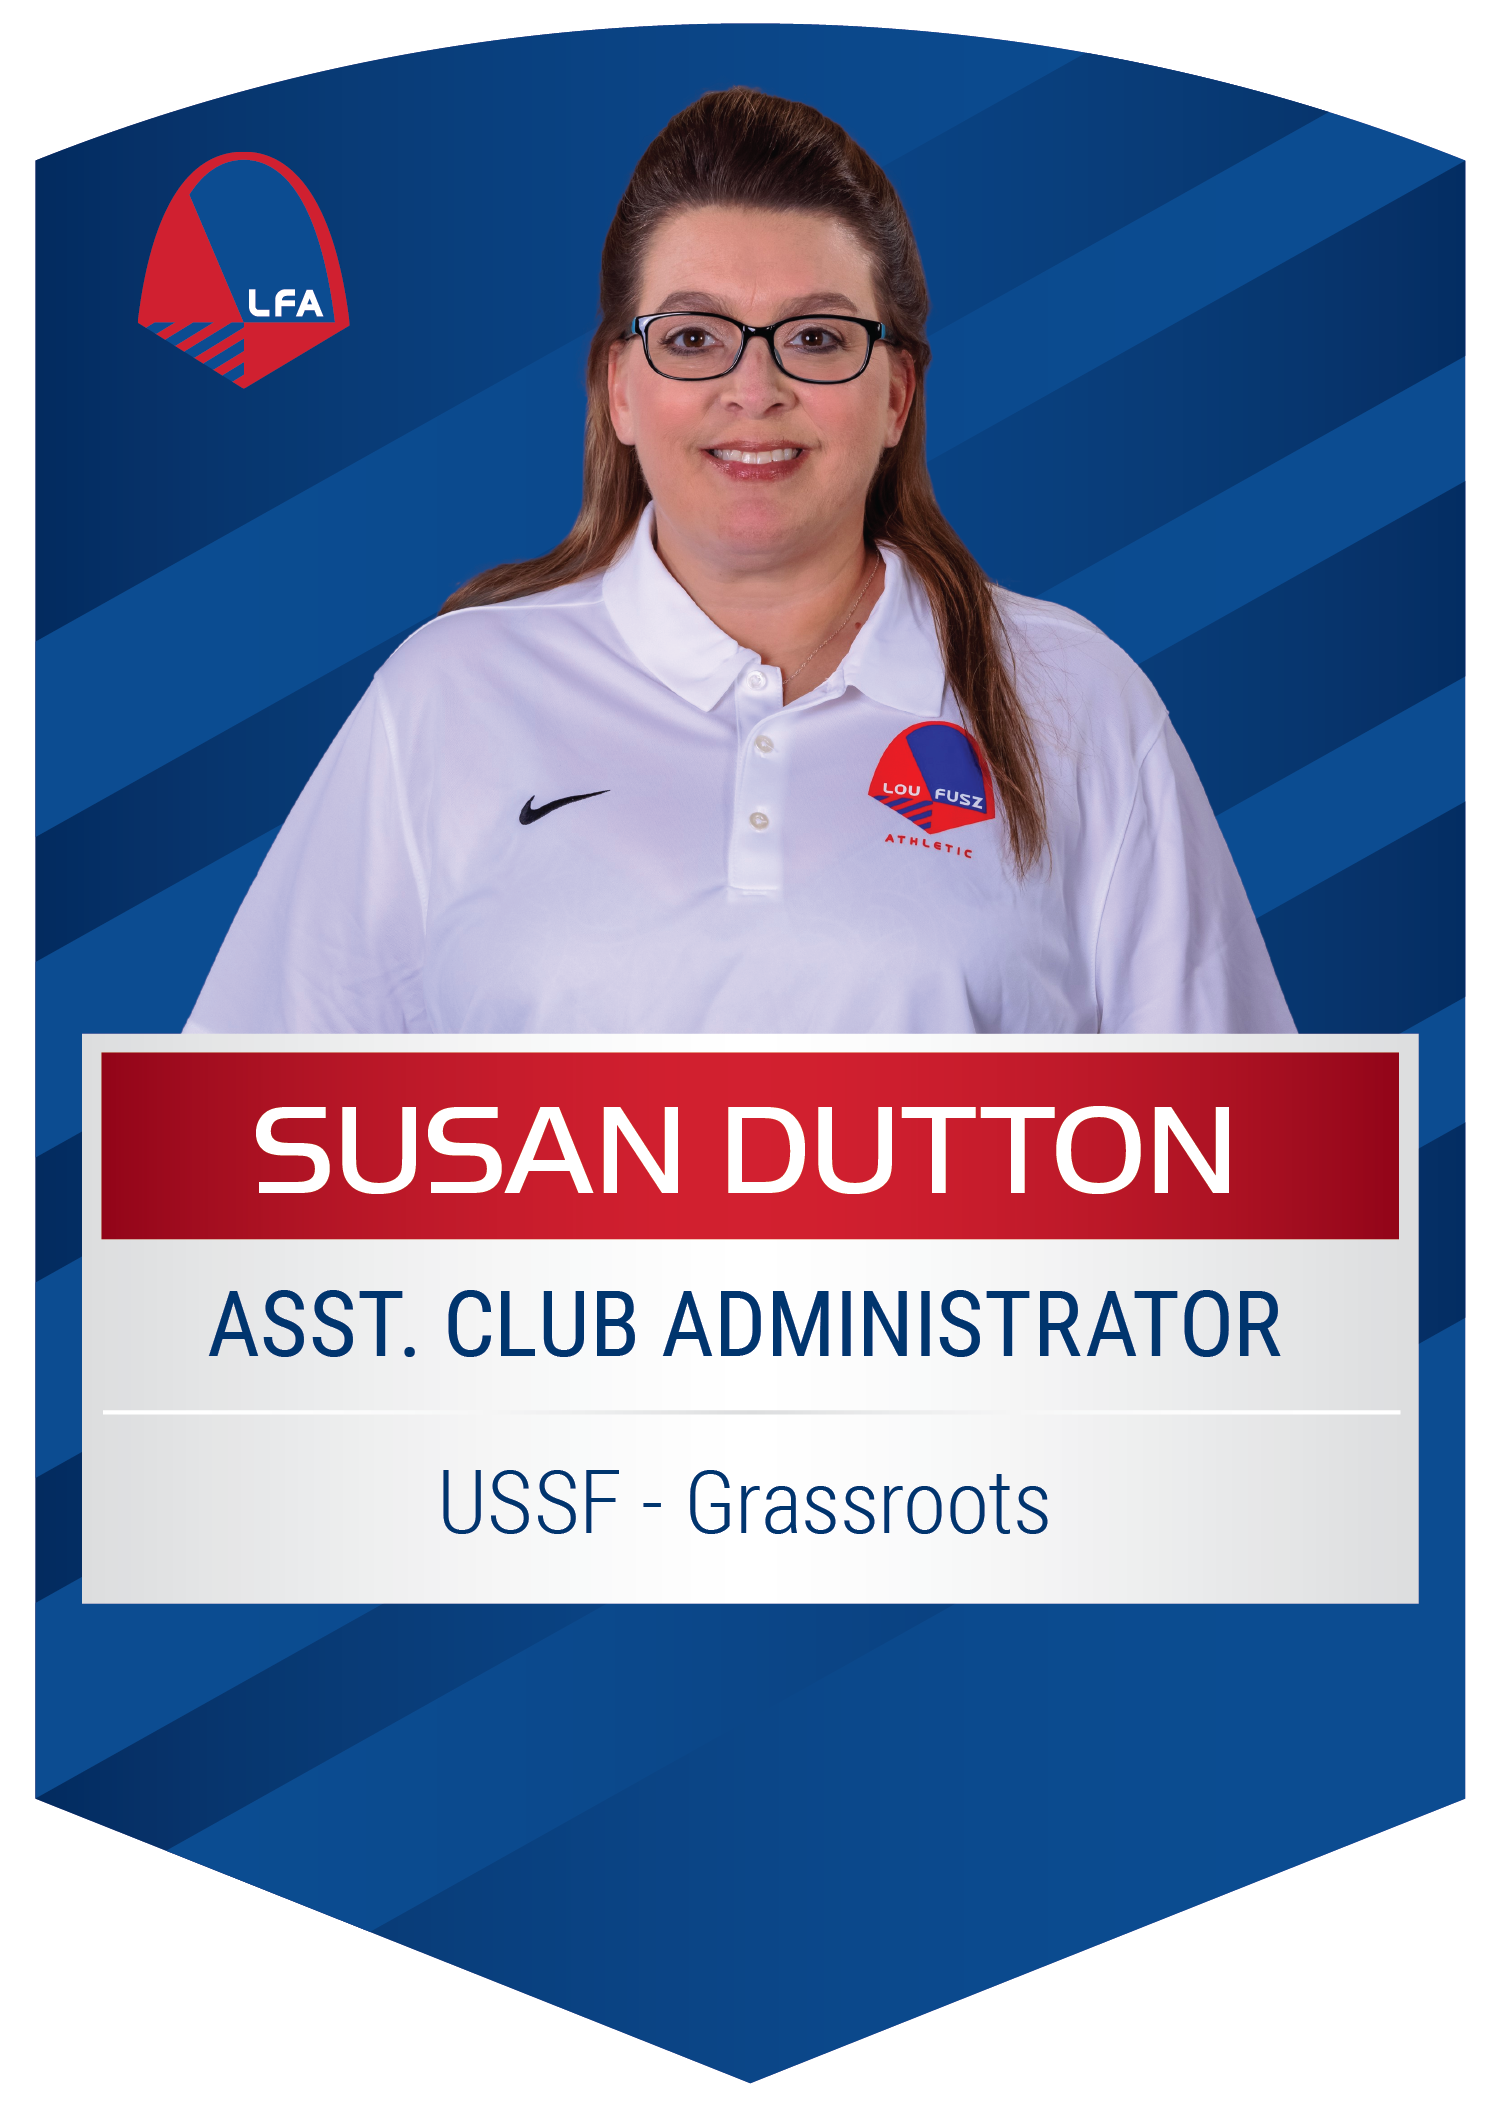 Susan Dutton